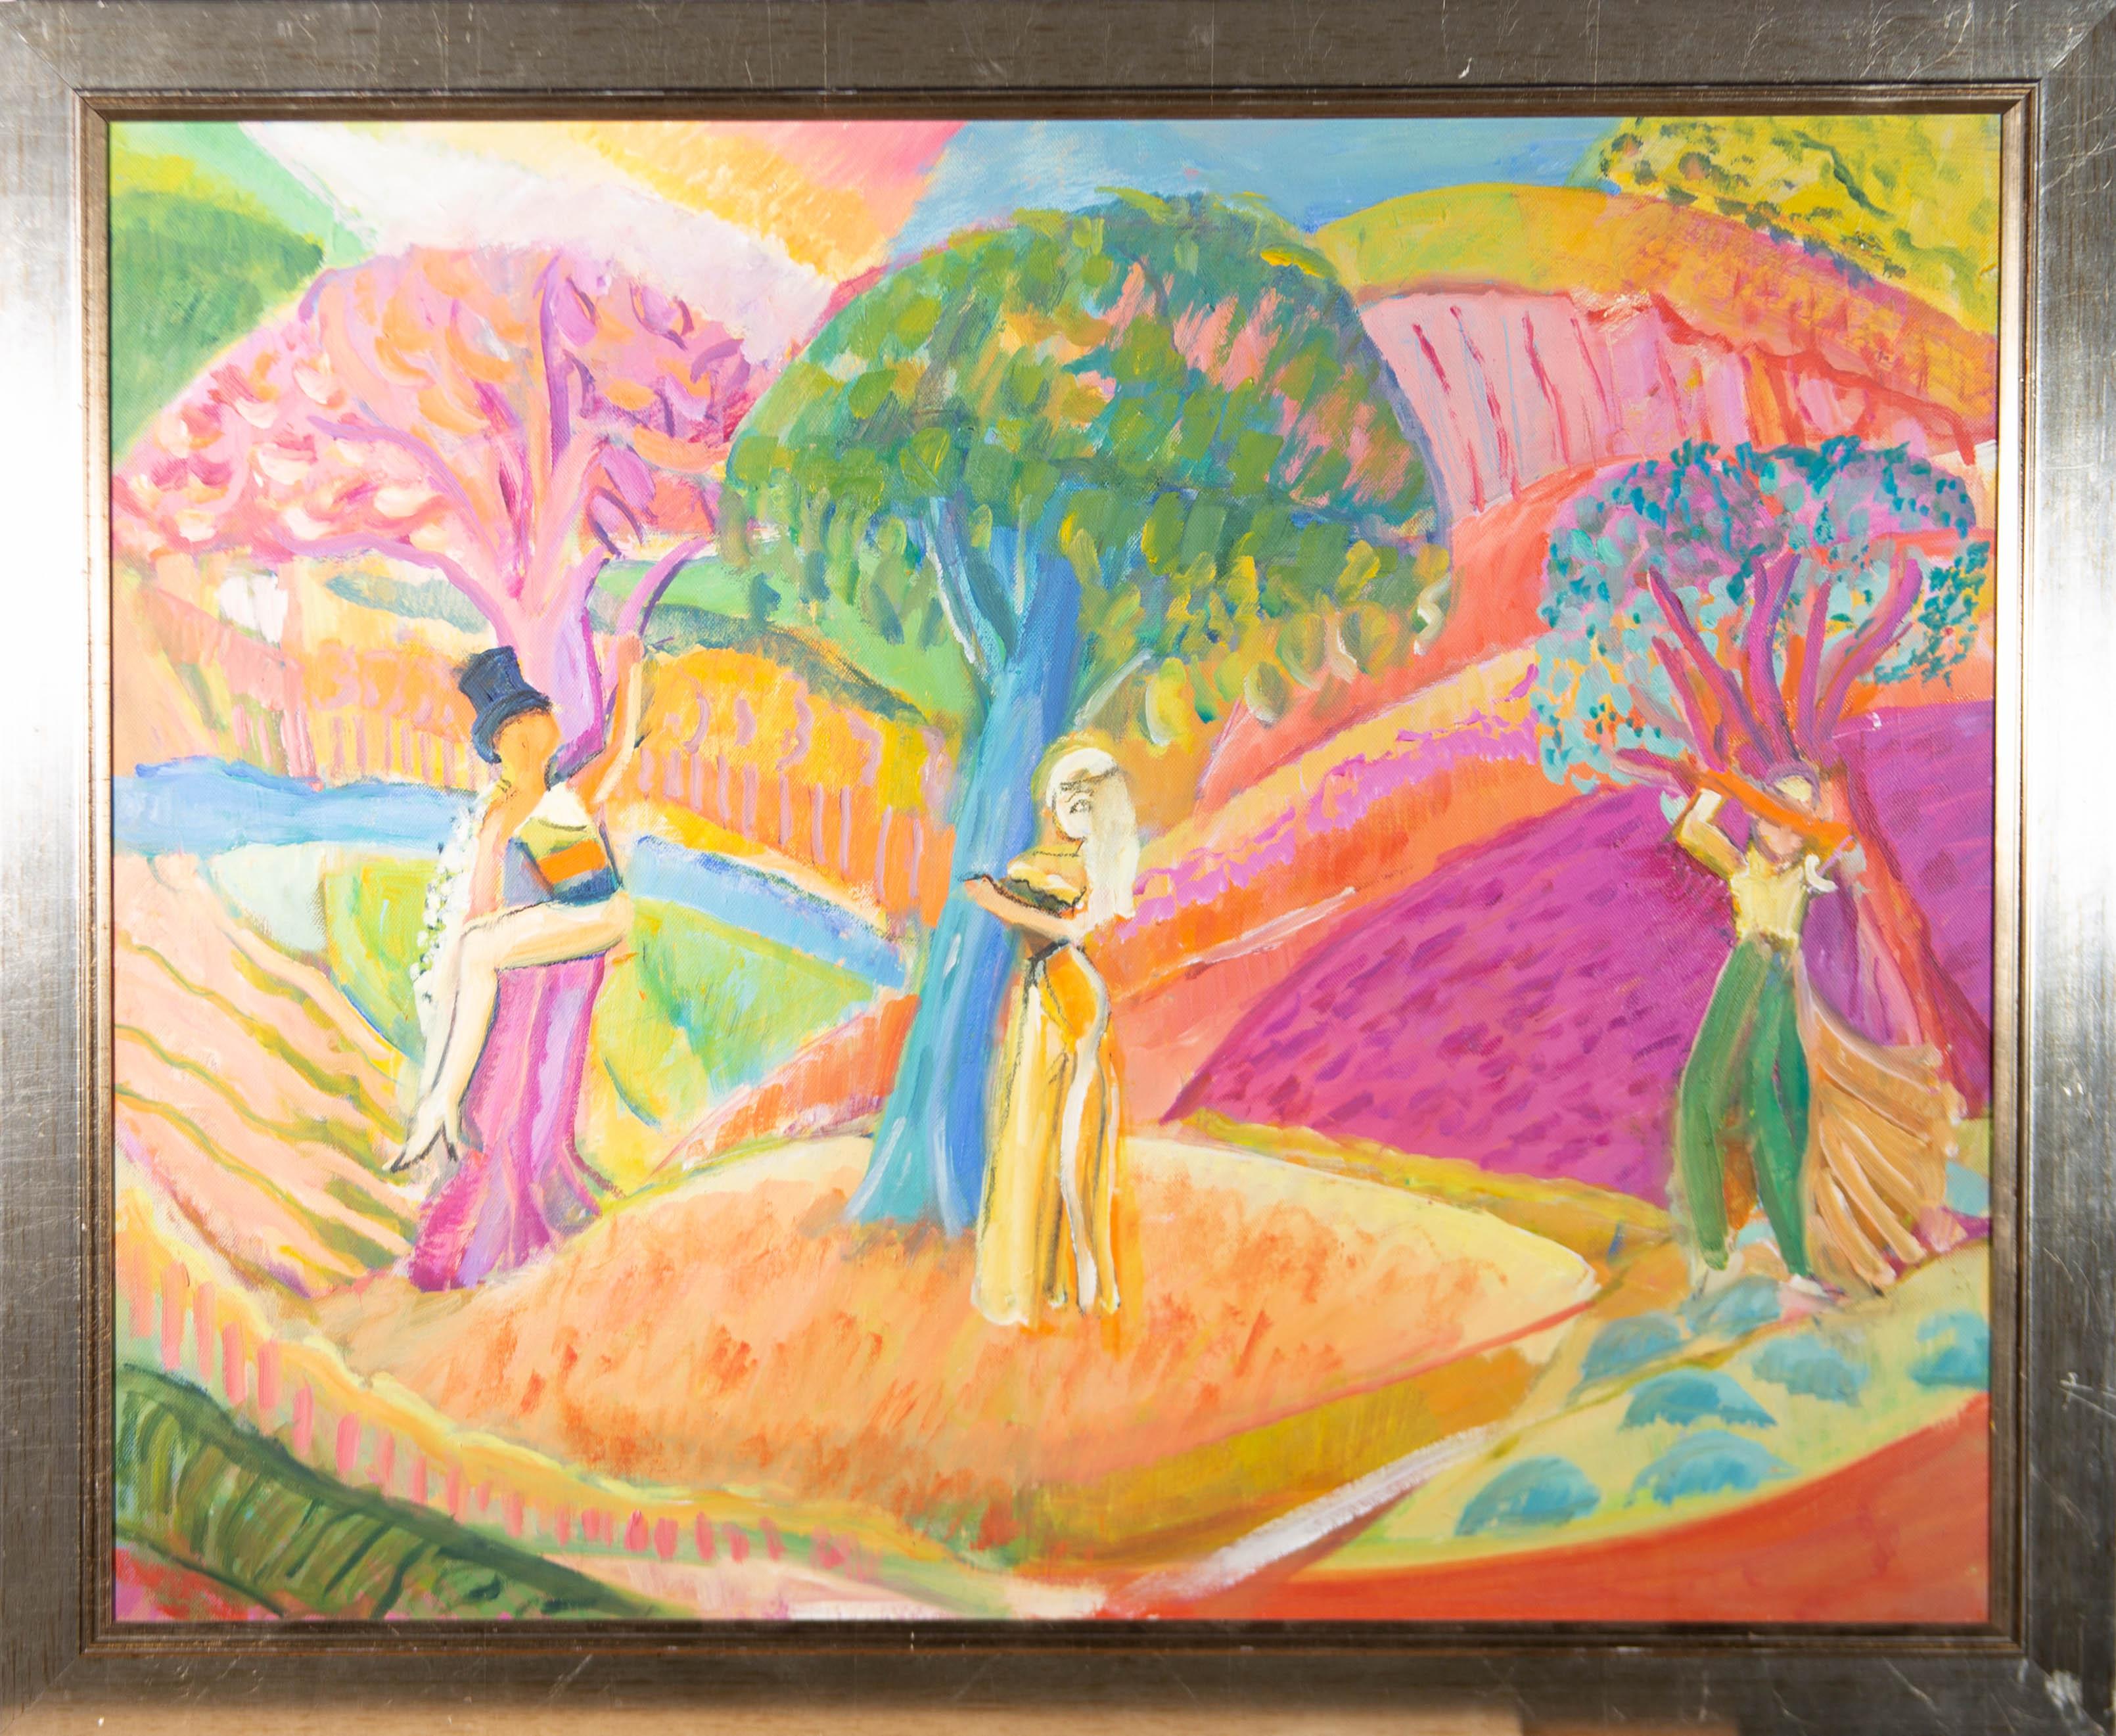 Une étude vibrante de l'artiste britannique Susan Paine représentant trois figures féminines dans un paysage. Chaque personnage est adossé à un arbre, entouré de collines et de fleurs. Bien présenté dans un cadre à effet doré. Non signée. Sur toile